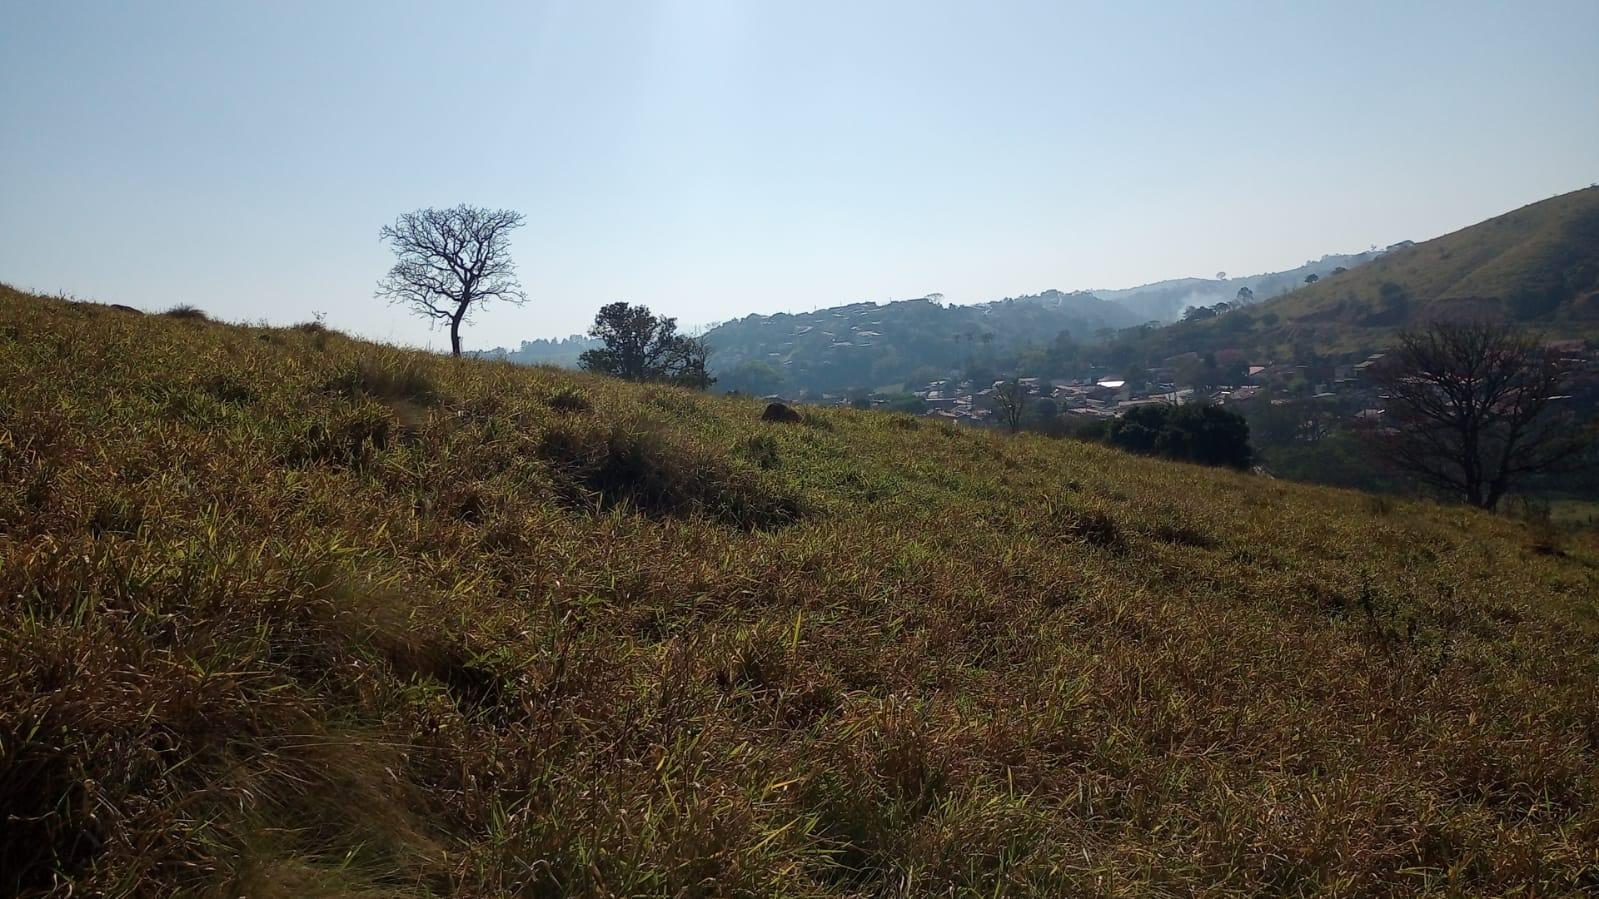 Terreno de 8 ha em São José dos Campos, SP